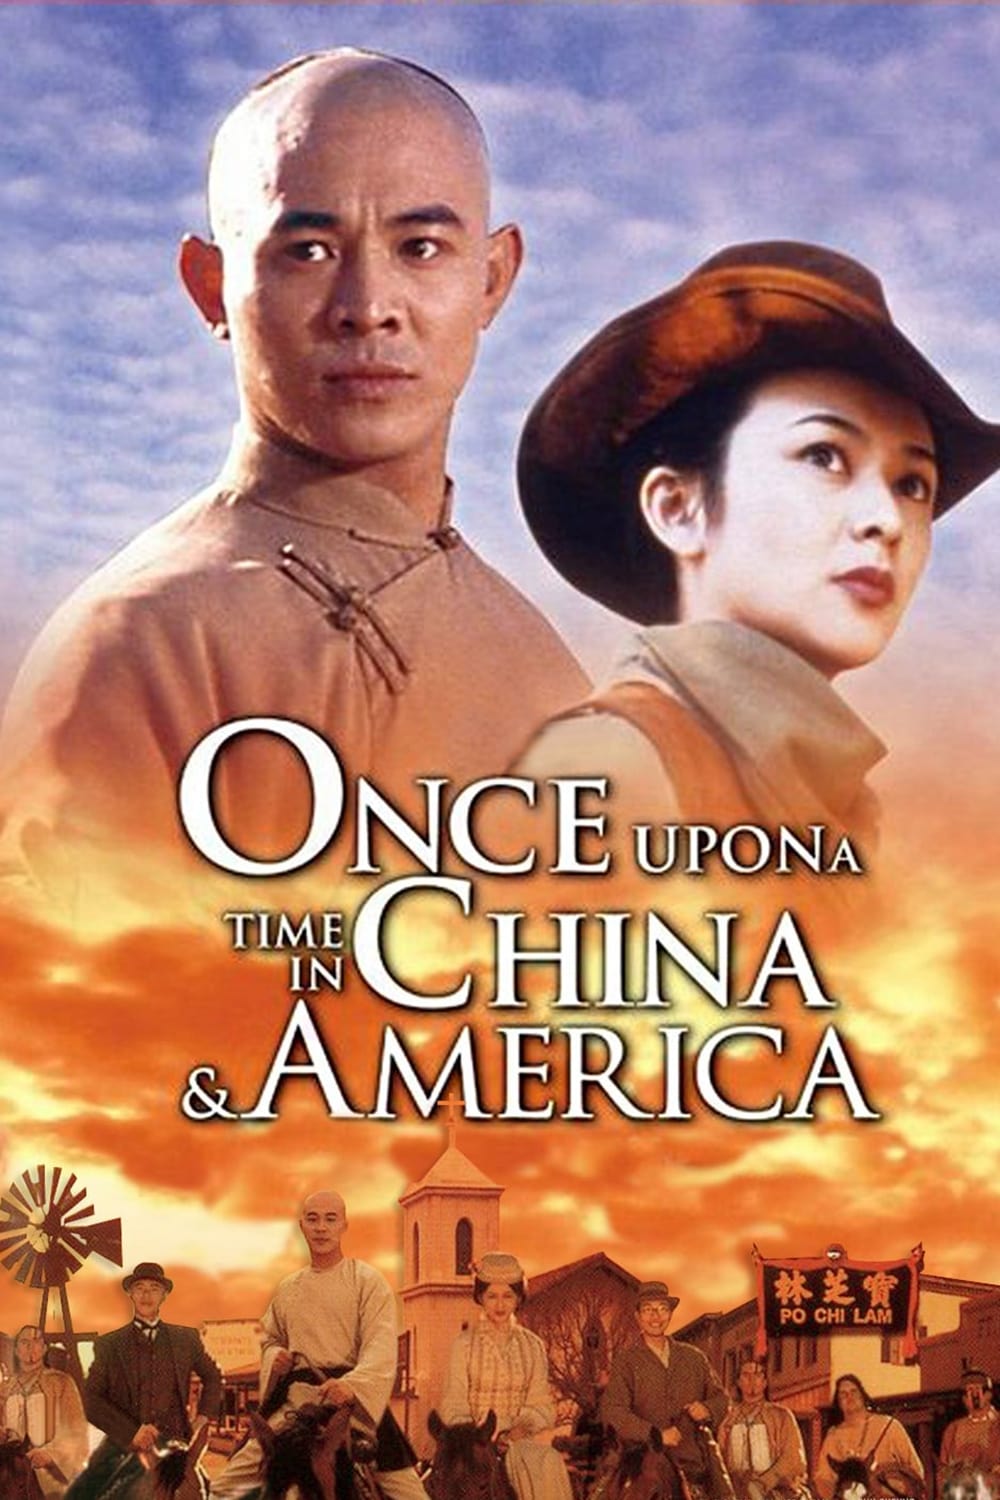 دانلود صوت دوبله فیلم Once Upon a Time in China and America